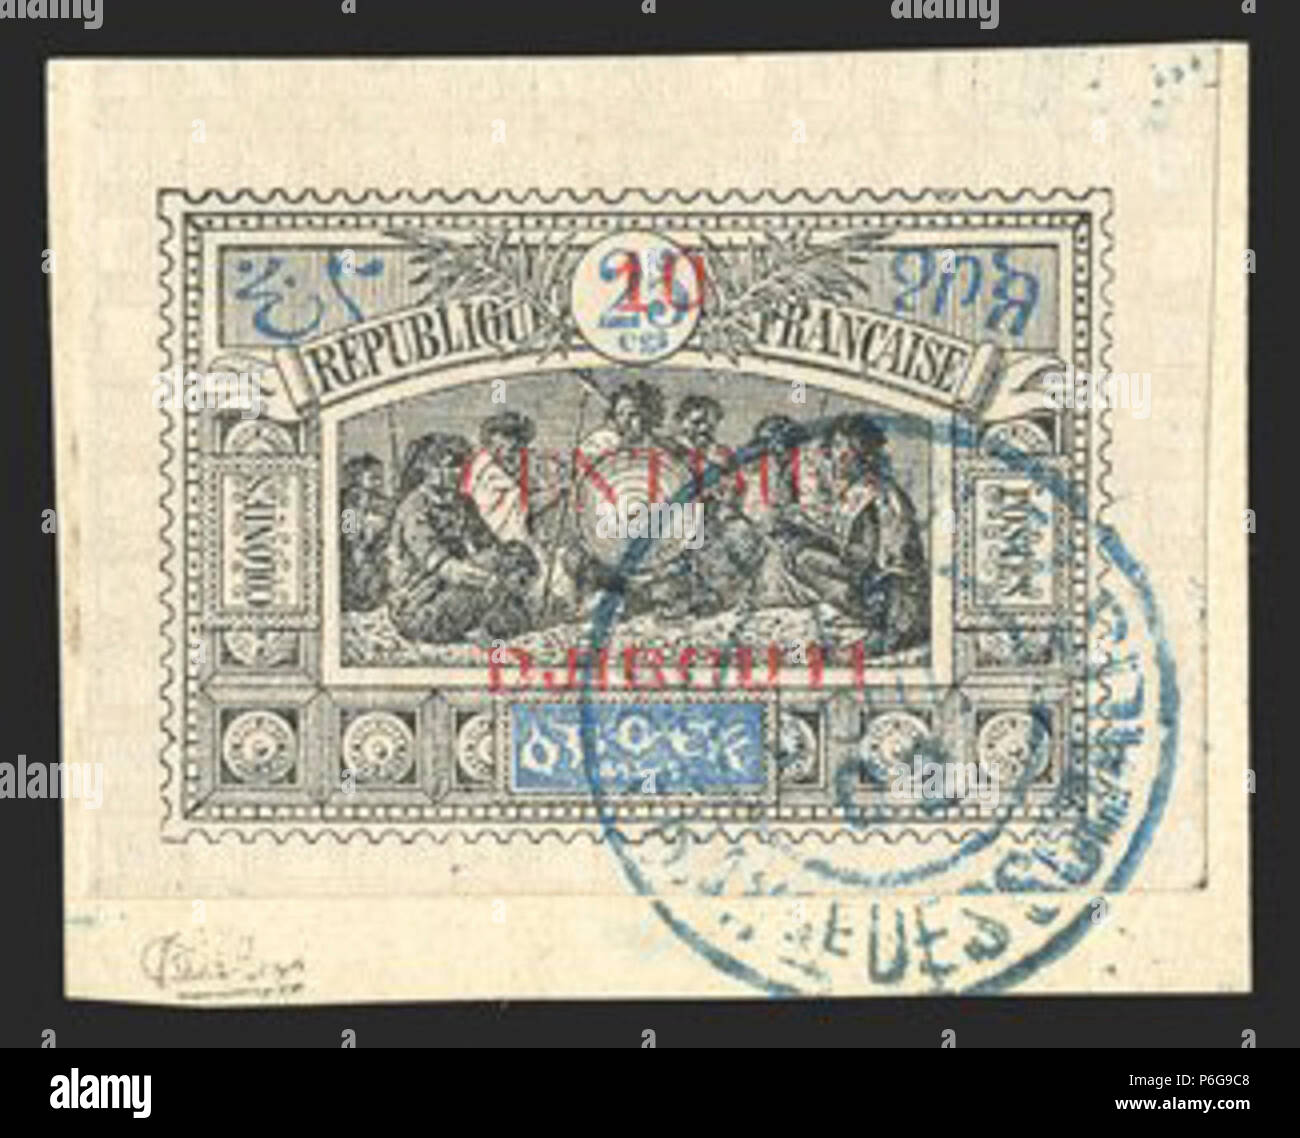 Укажите российского монарха изображенного на почтовом блоке. Почтовые марки Djibouti. Почтовые марки Сомали. Почтовые марки Республика Джибути. Кост (1902 г.).